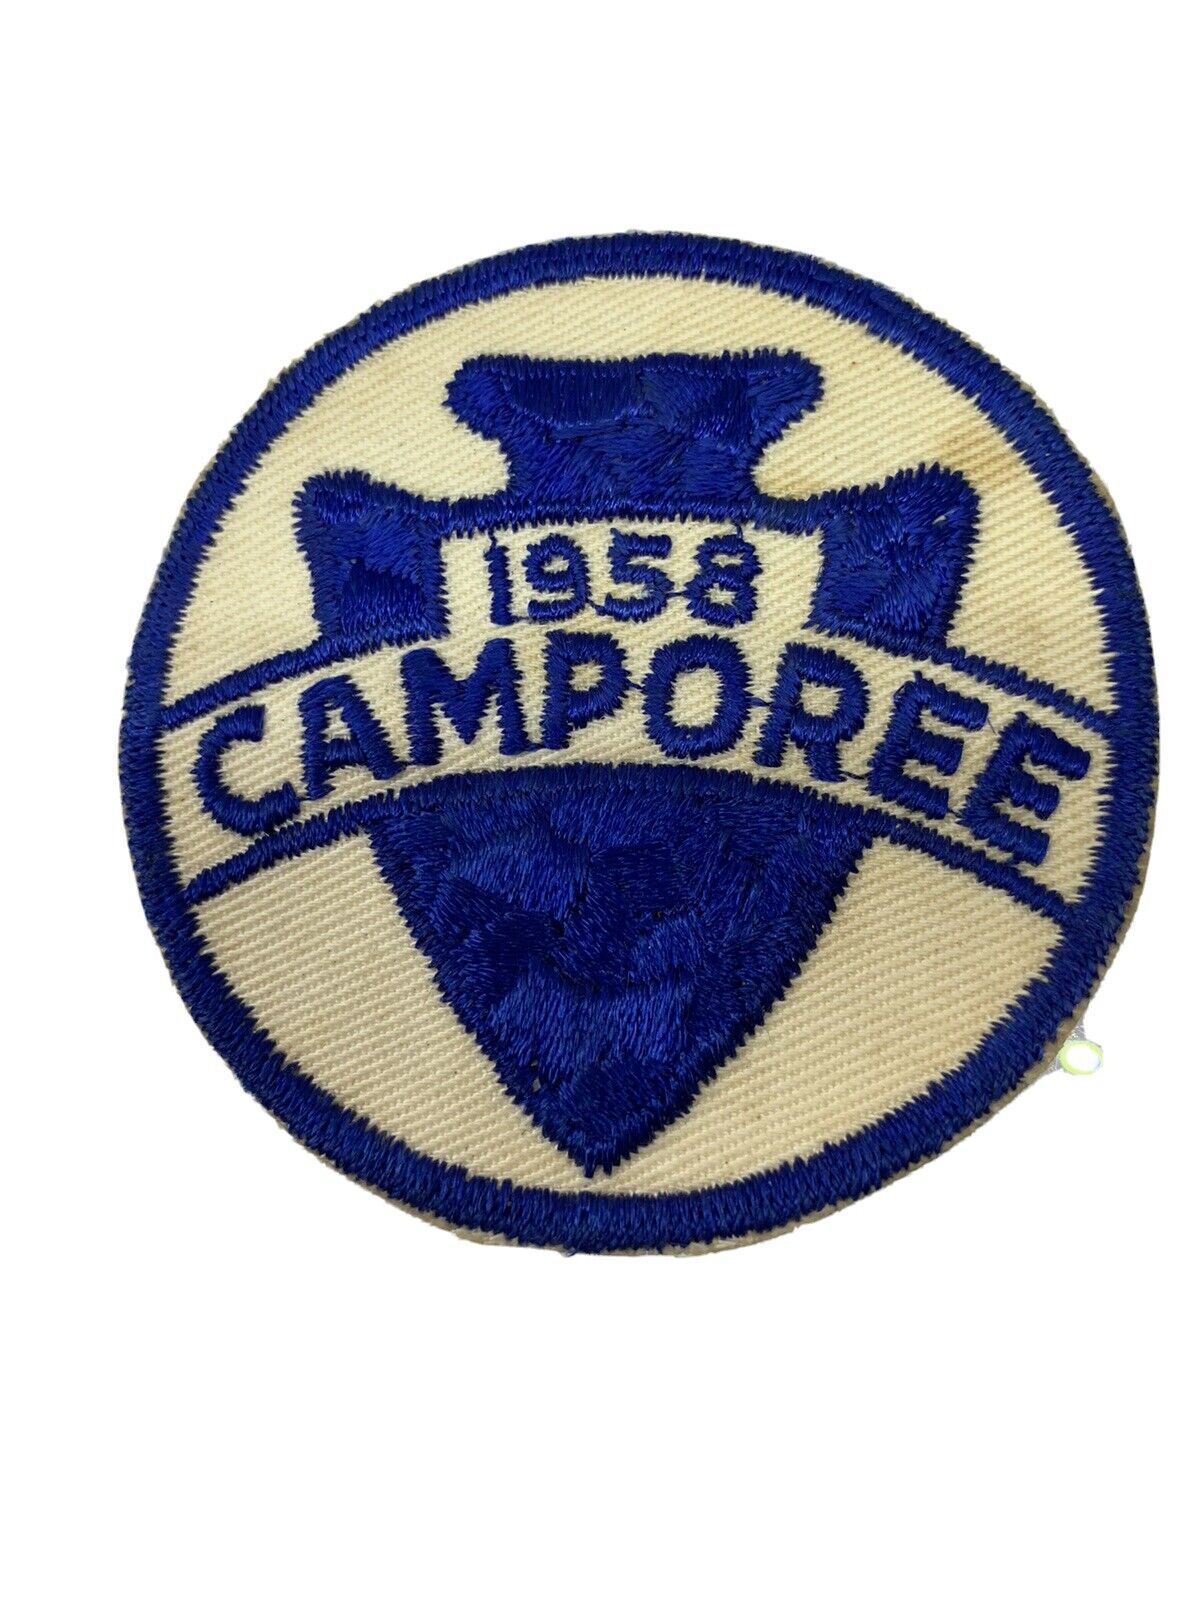 Vintage 1958 Camporee Arrowhead Design Boy Scout BSA Patch